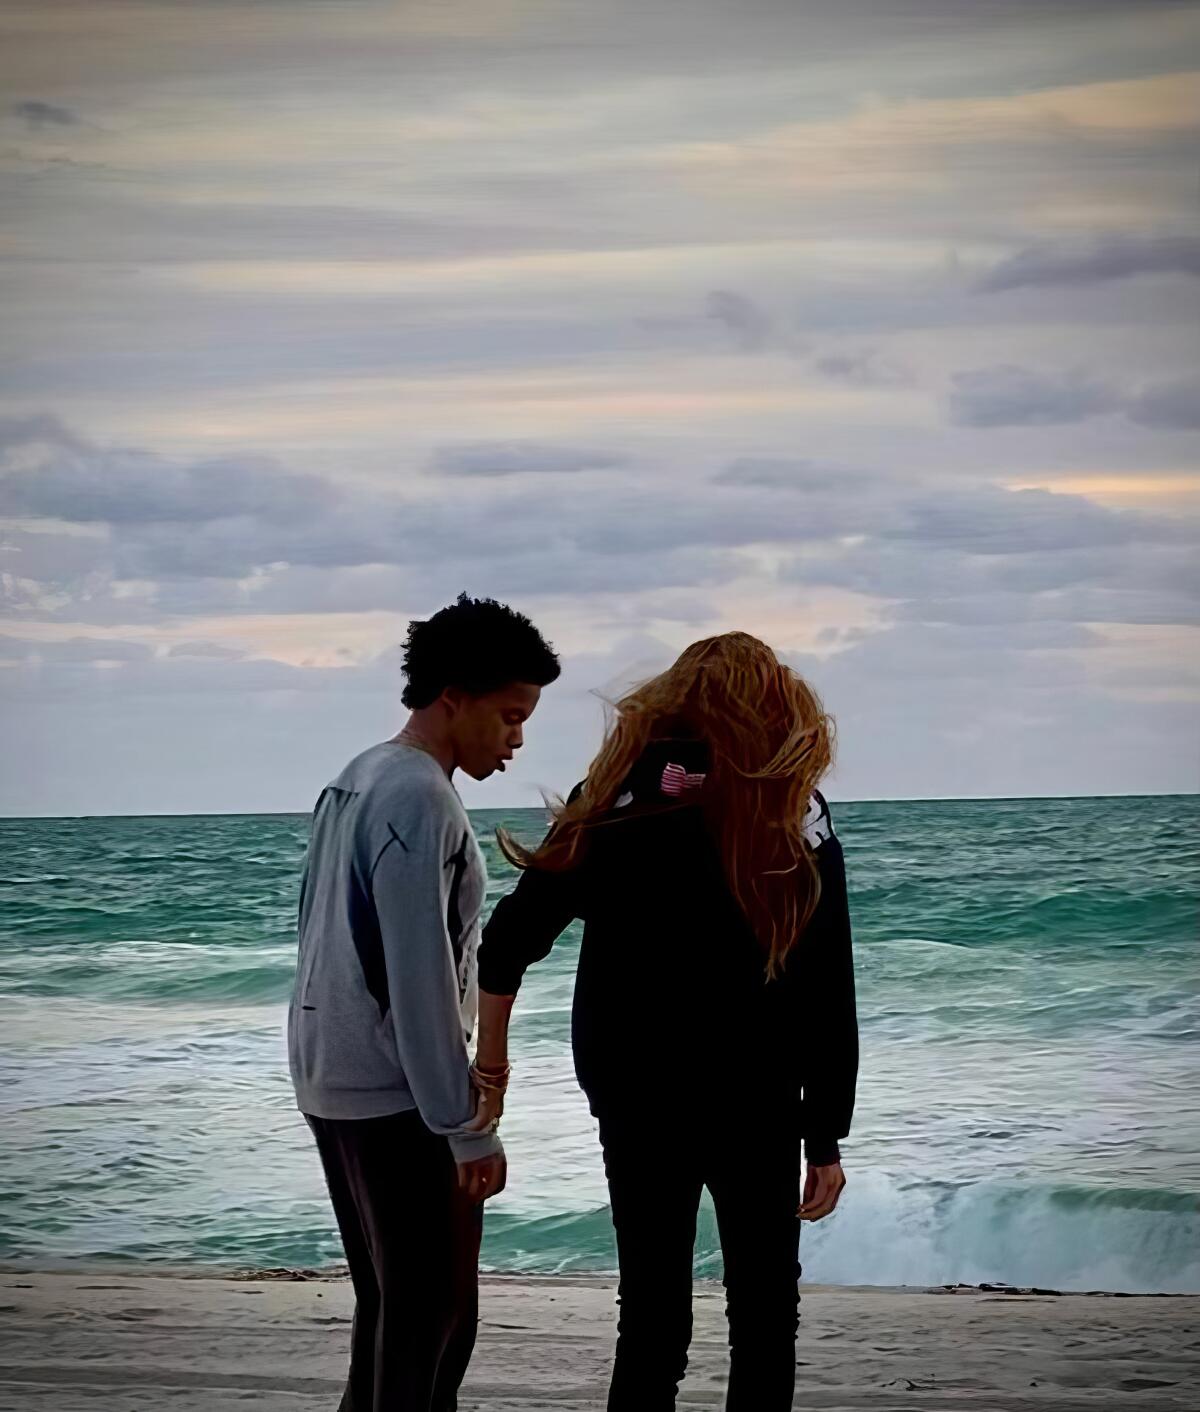 Two people walking on the beach looking at ocean waves.